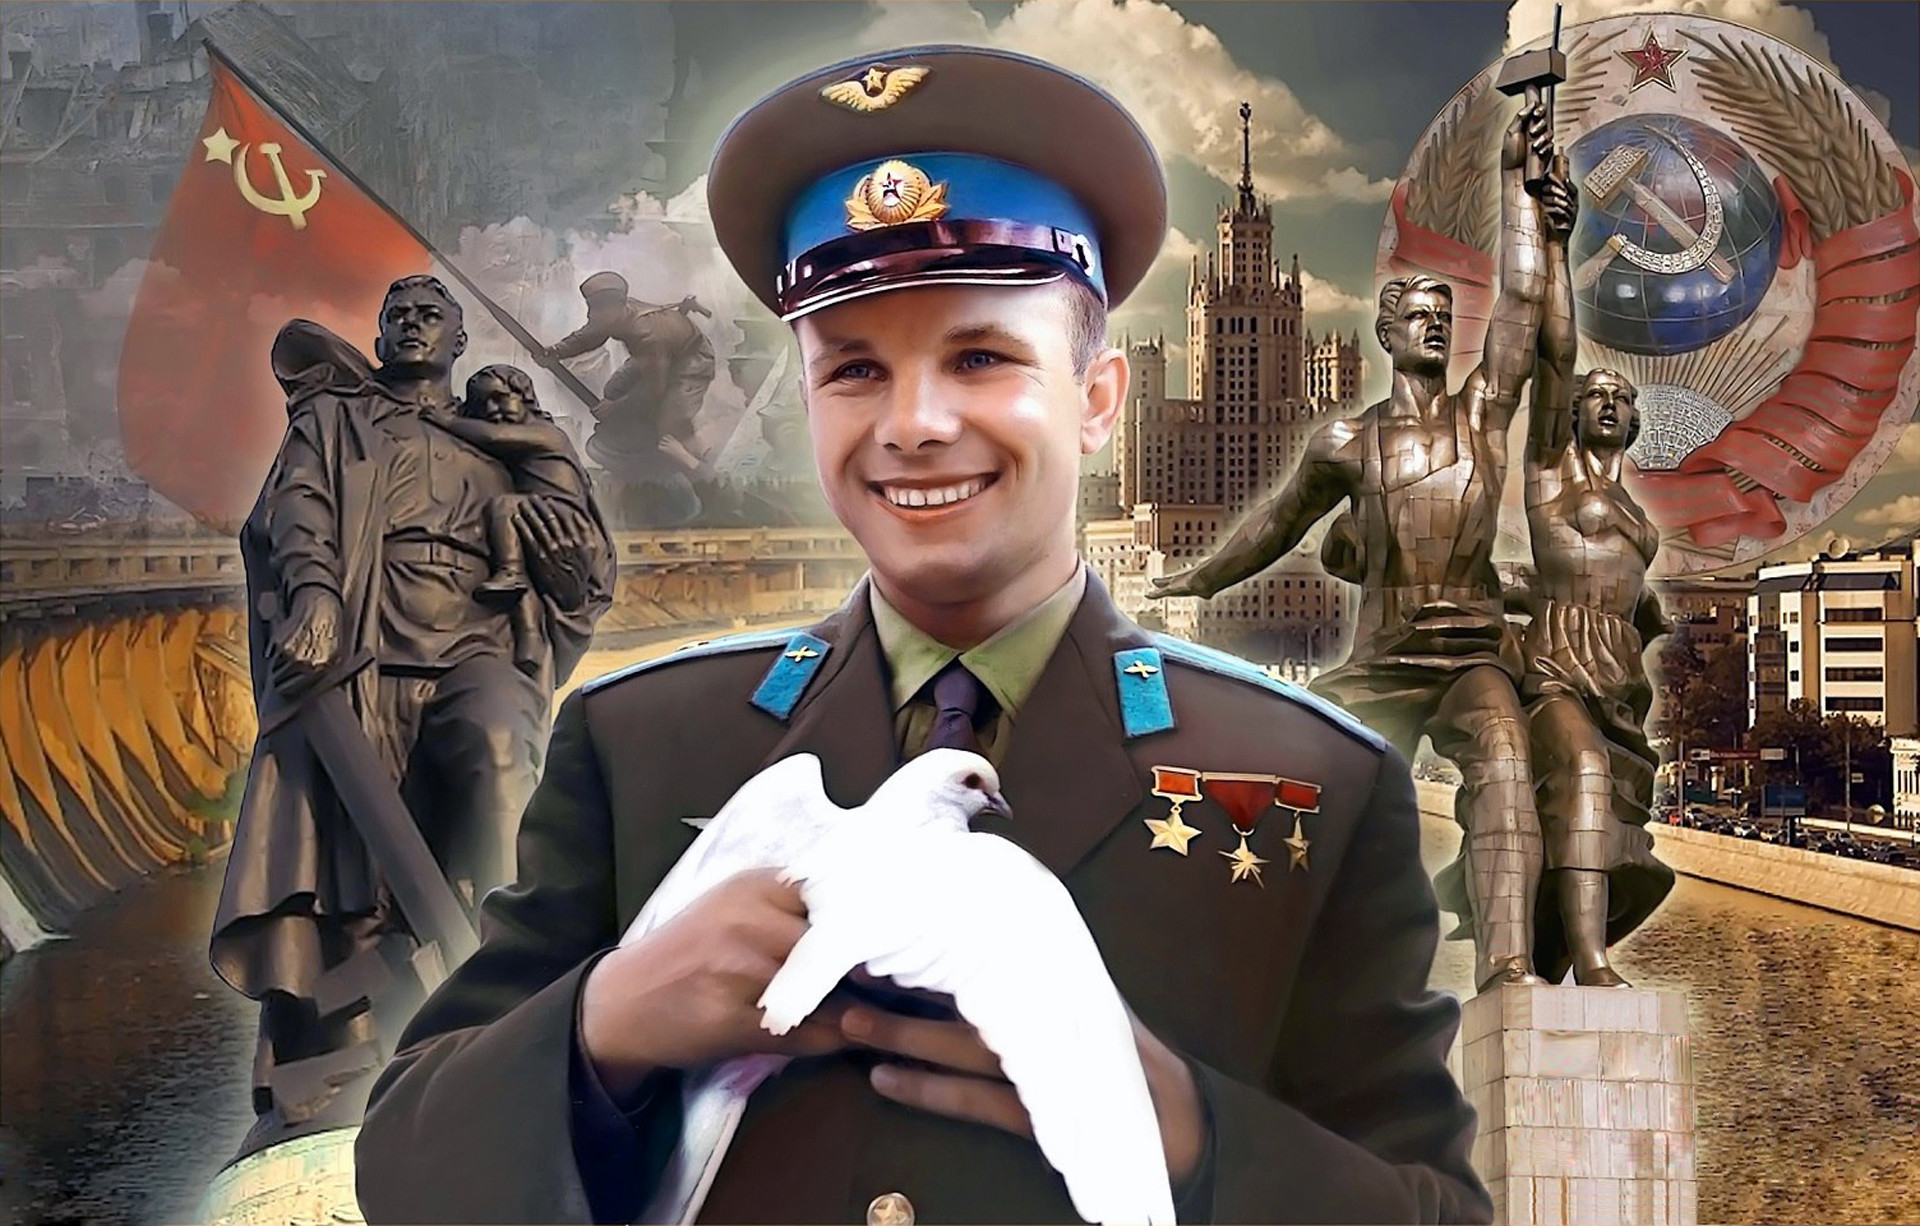 ТЕСТ: какое событие из истории СССР изображено на фото? 